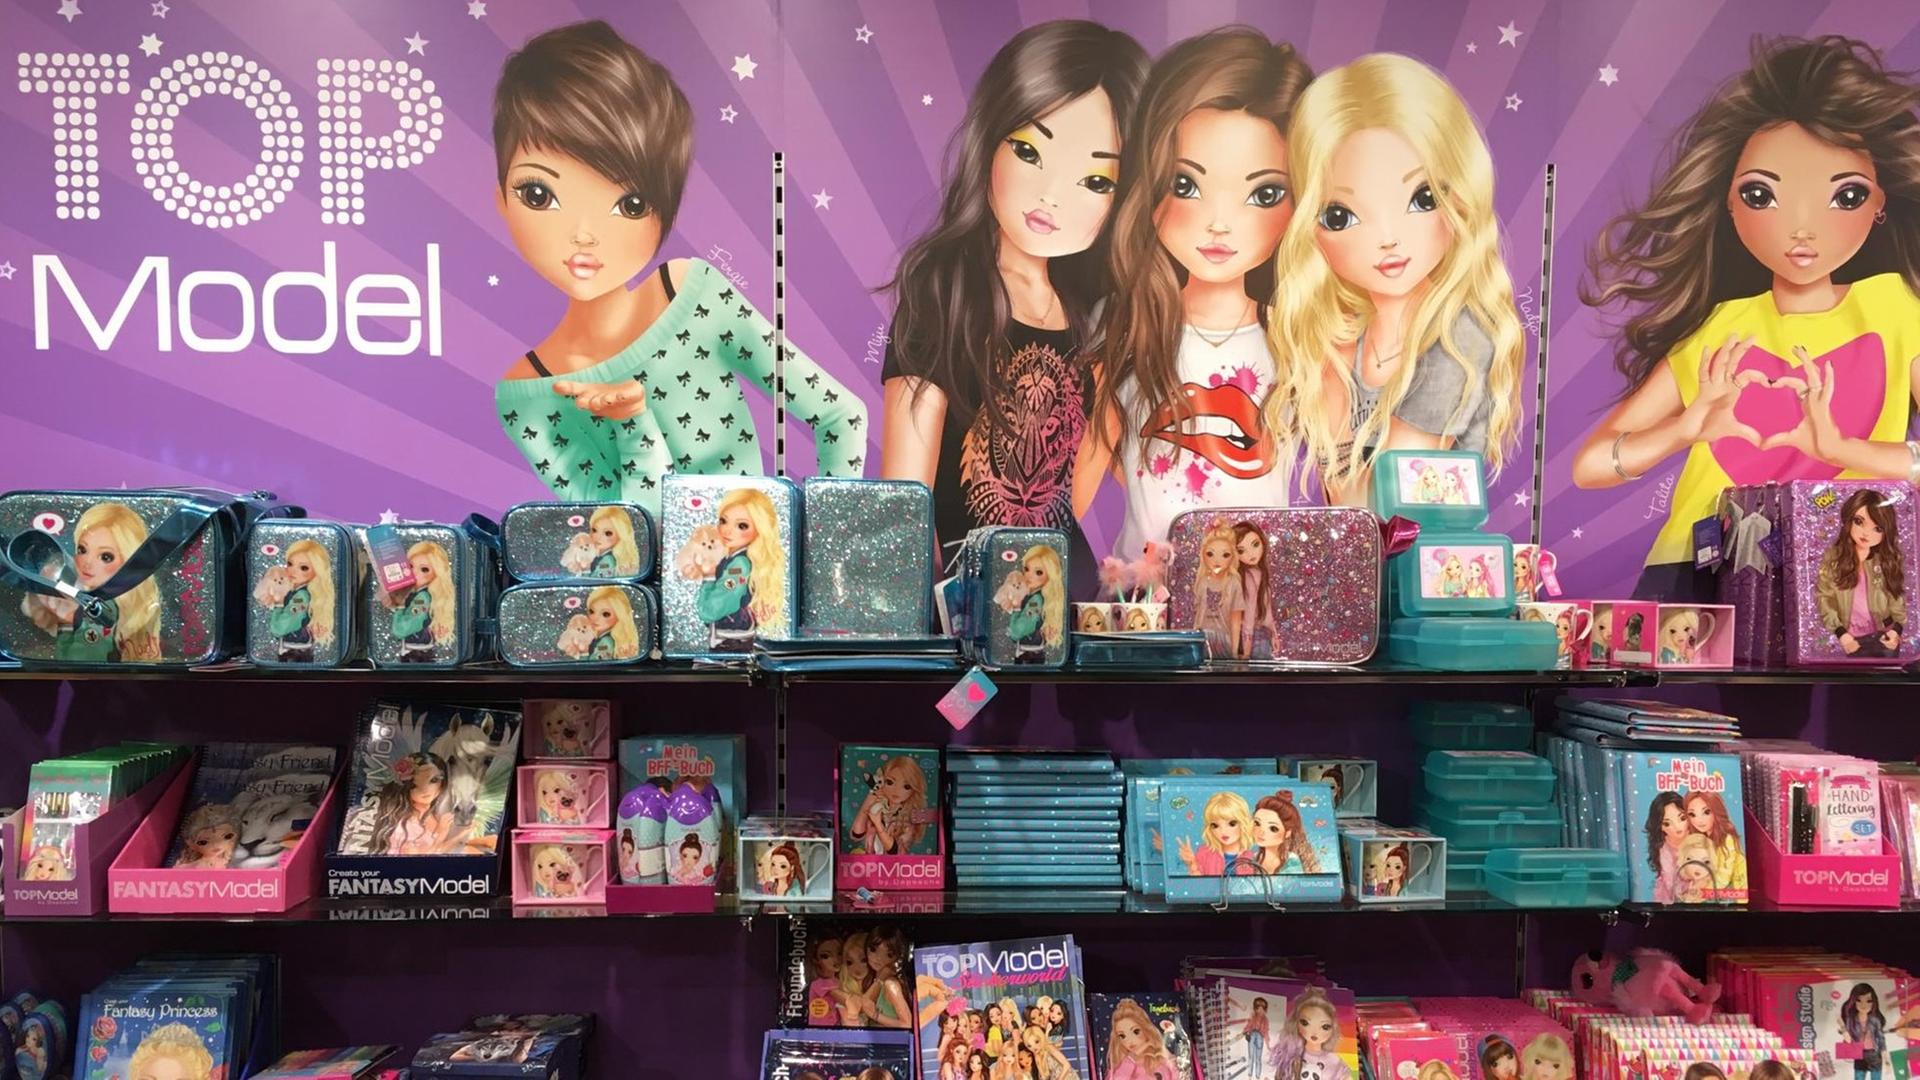 Vier Regalfächer mit pinken und türkisen, auffällig glitzernden Spielwaren. Im Hintergrund hängt ein Plakat mit comichaft gezeichneten Mädchenfiguren und dem Wort "Top Model"